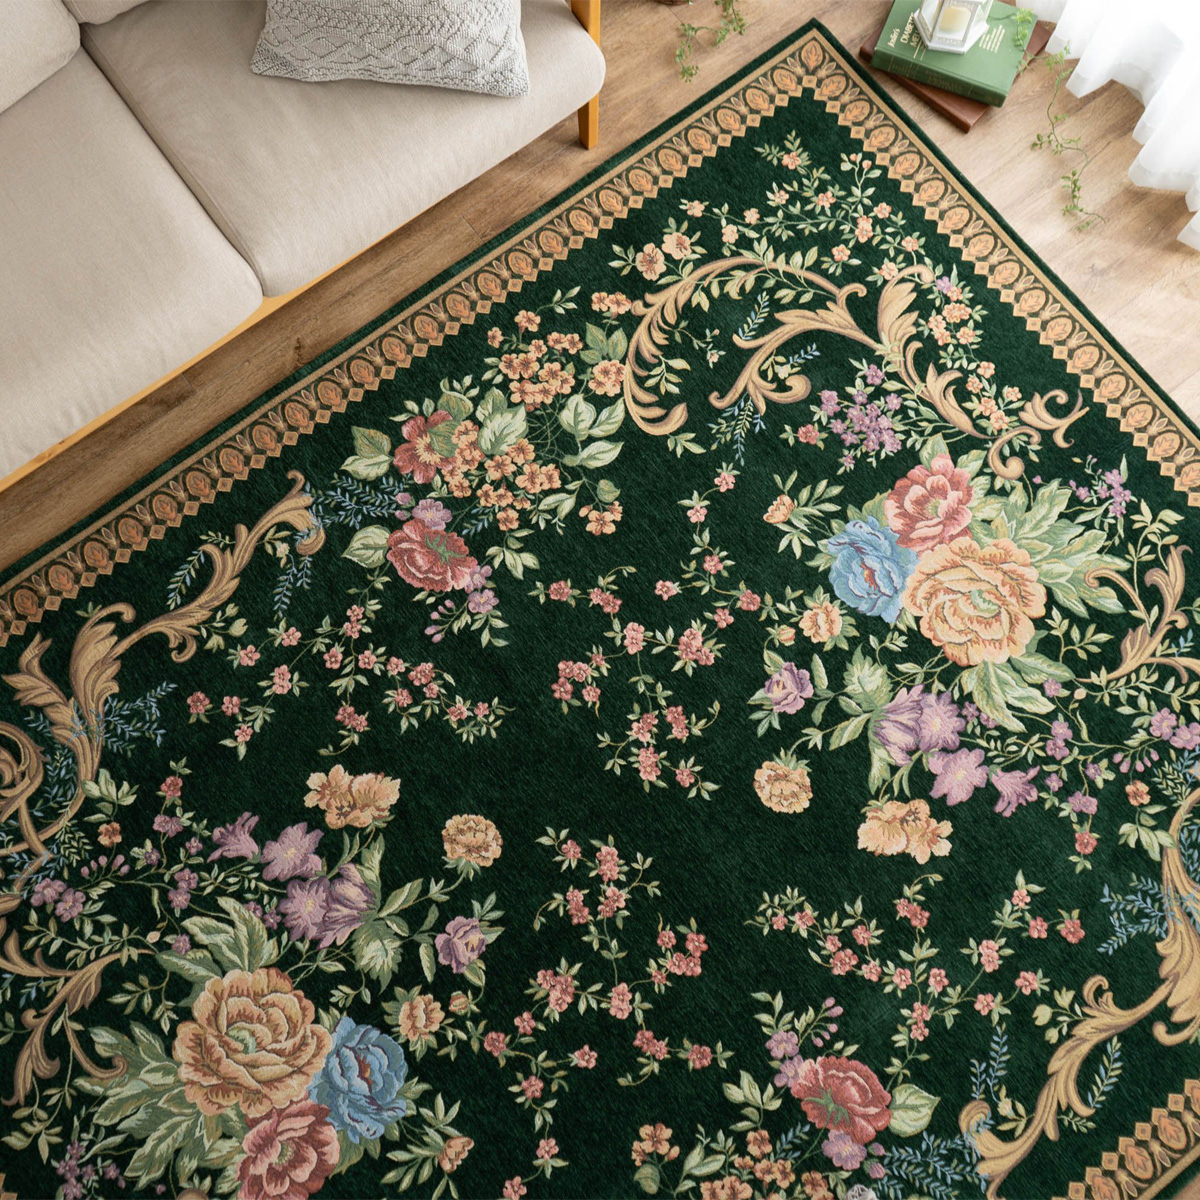 ゴブラン織 ラグマット/絨毯 〔グリーン 楕円形 約190cm×240cm